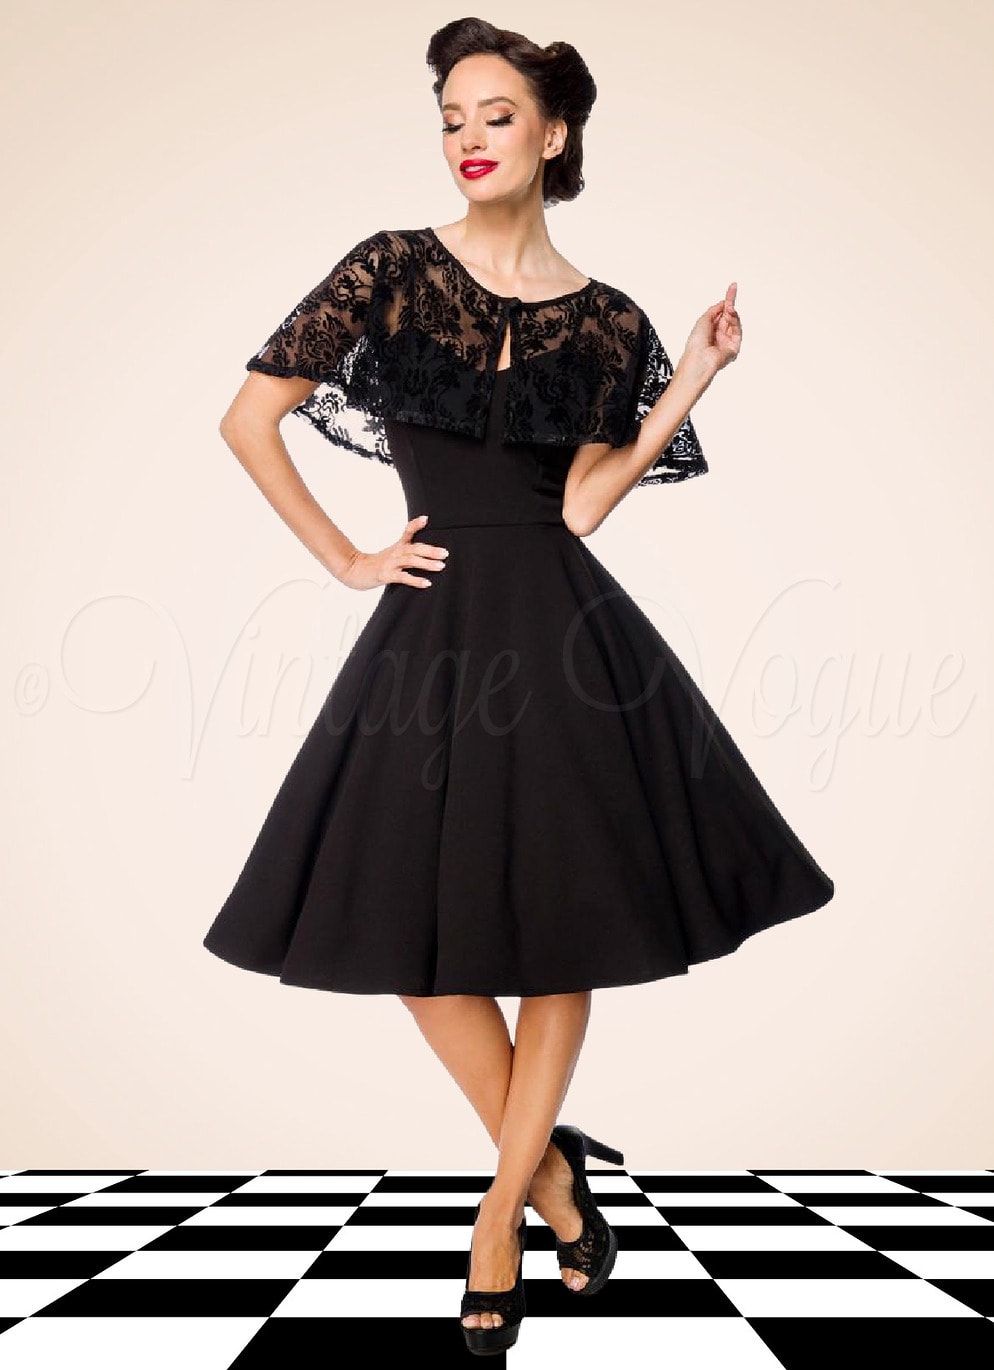 Belsira 50er Jahre Vintage Retro Swing Kleid mit Mesh Spitzen Cape in Schwarz Petticoat Damen Damenkleid Spitzenkleid elegant Abendkleid festlich